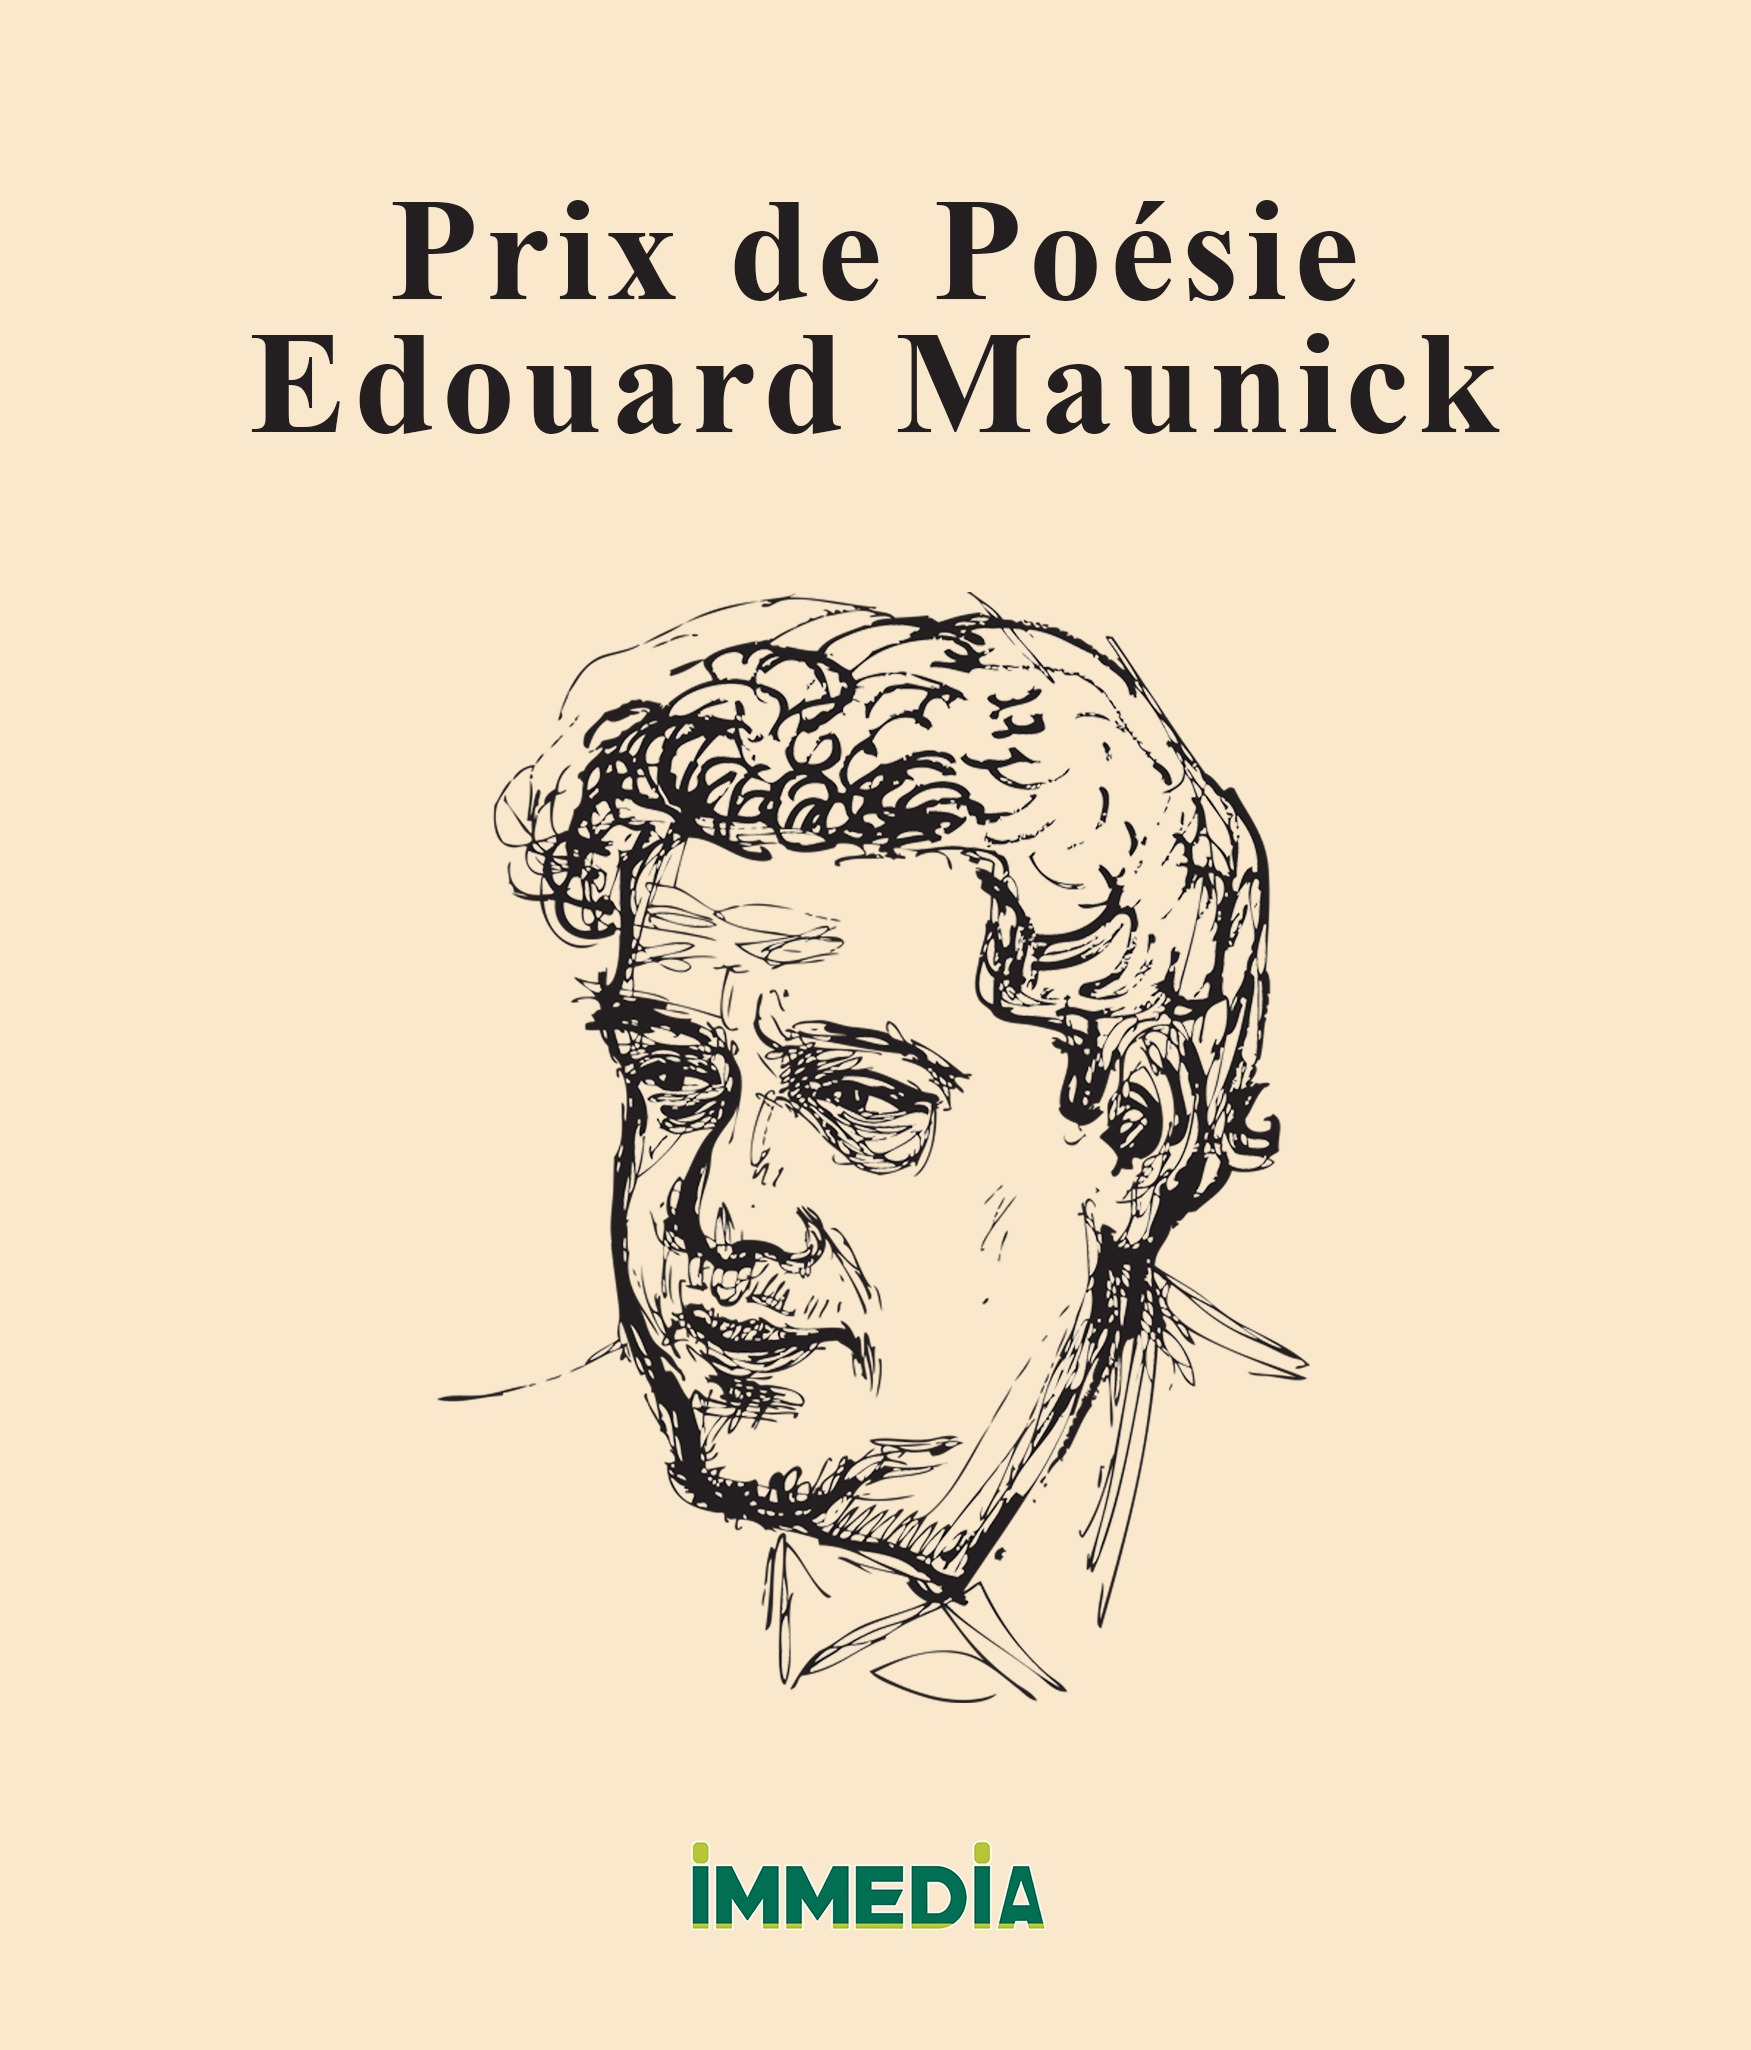 Cent Mauriciens d’ici et d’ailleurs (Australie, Canada, France) ont participé à la quatrième édition du Prix de poésie Edouard Maunick dont le thème est « Demain, Mon Île ».